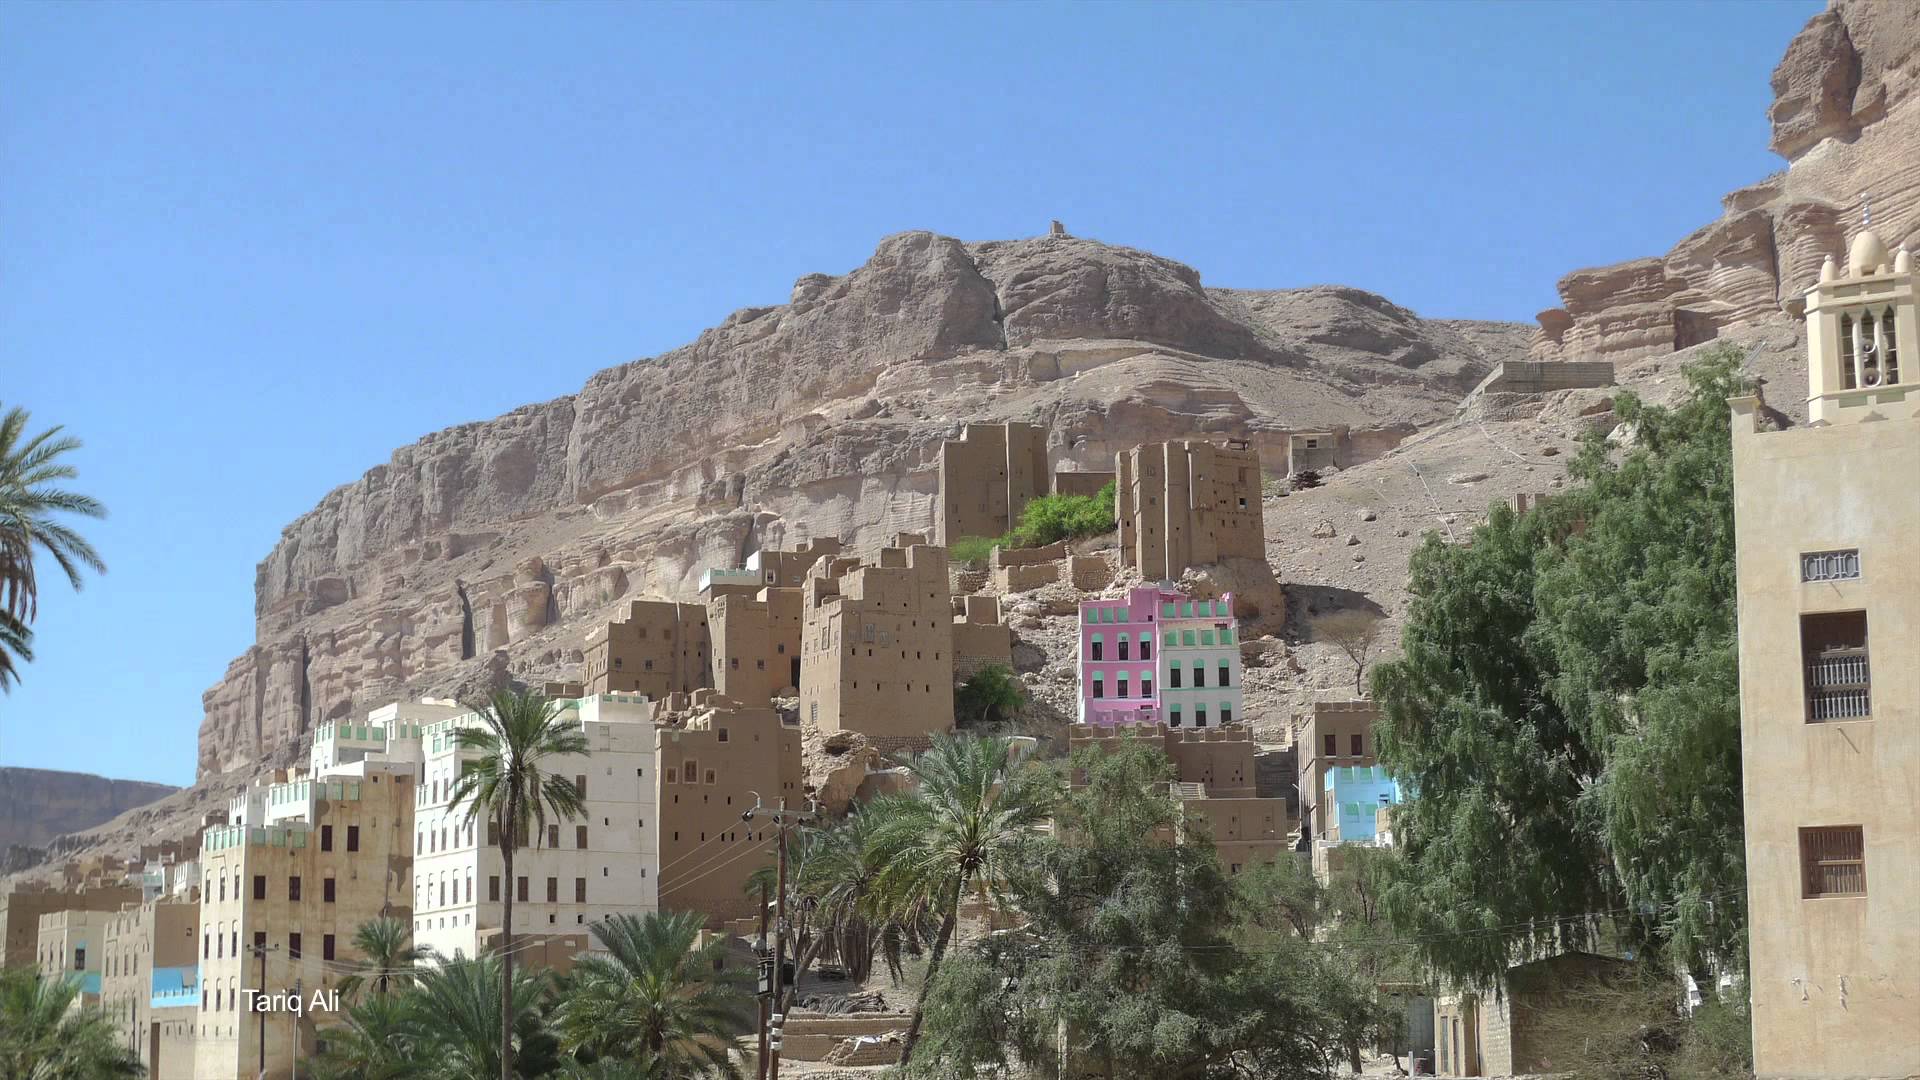 2015: Yemen